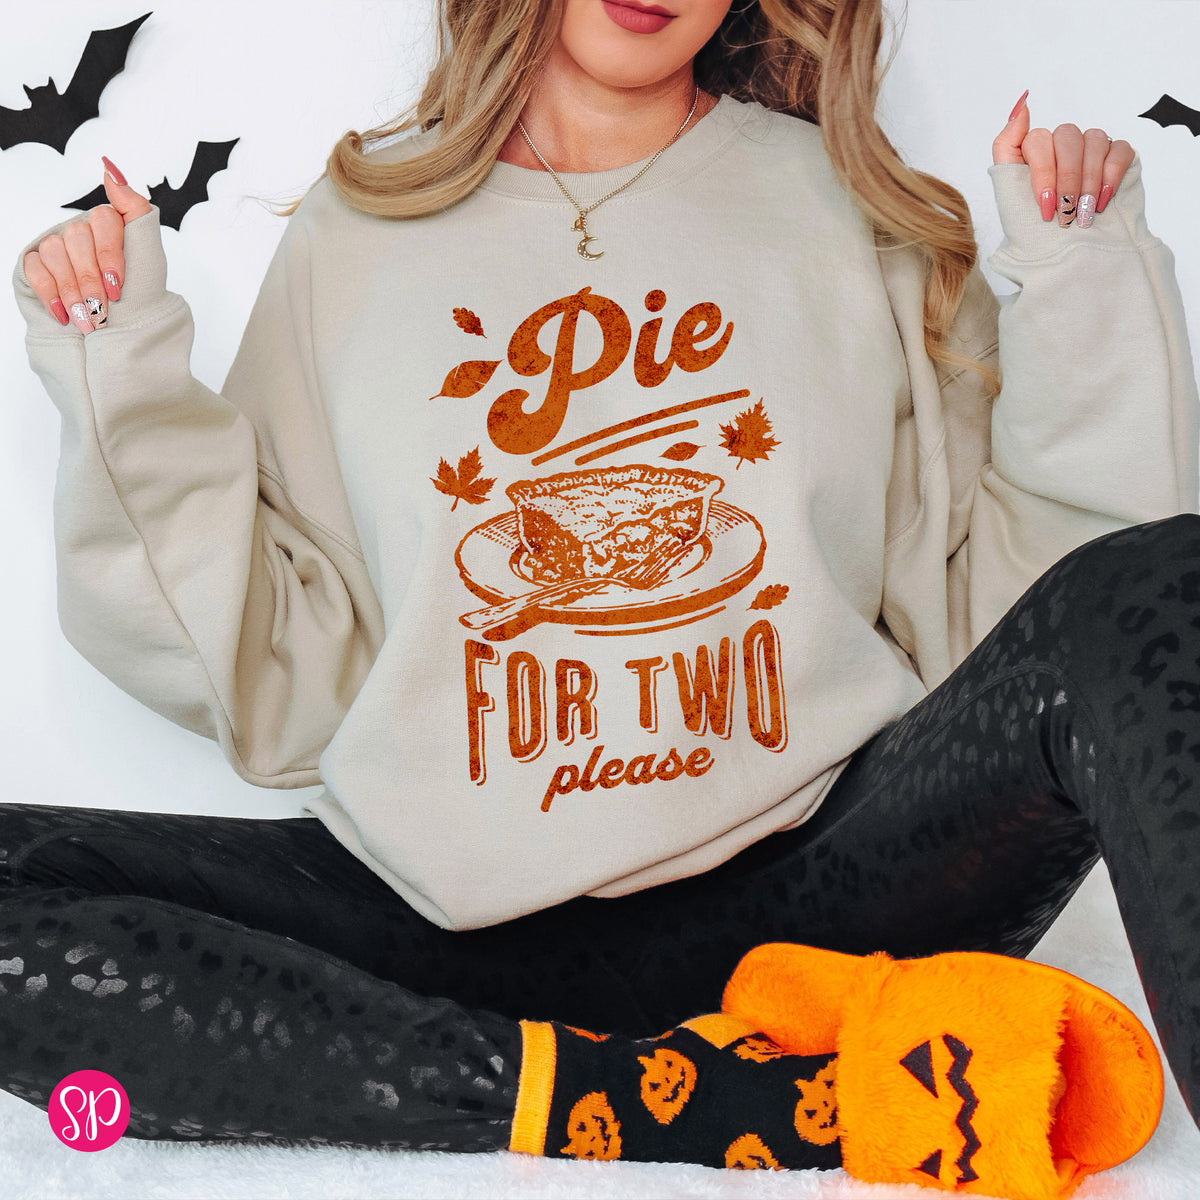 Pie for Two Please Sweatshirt